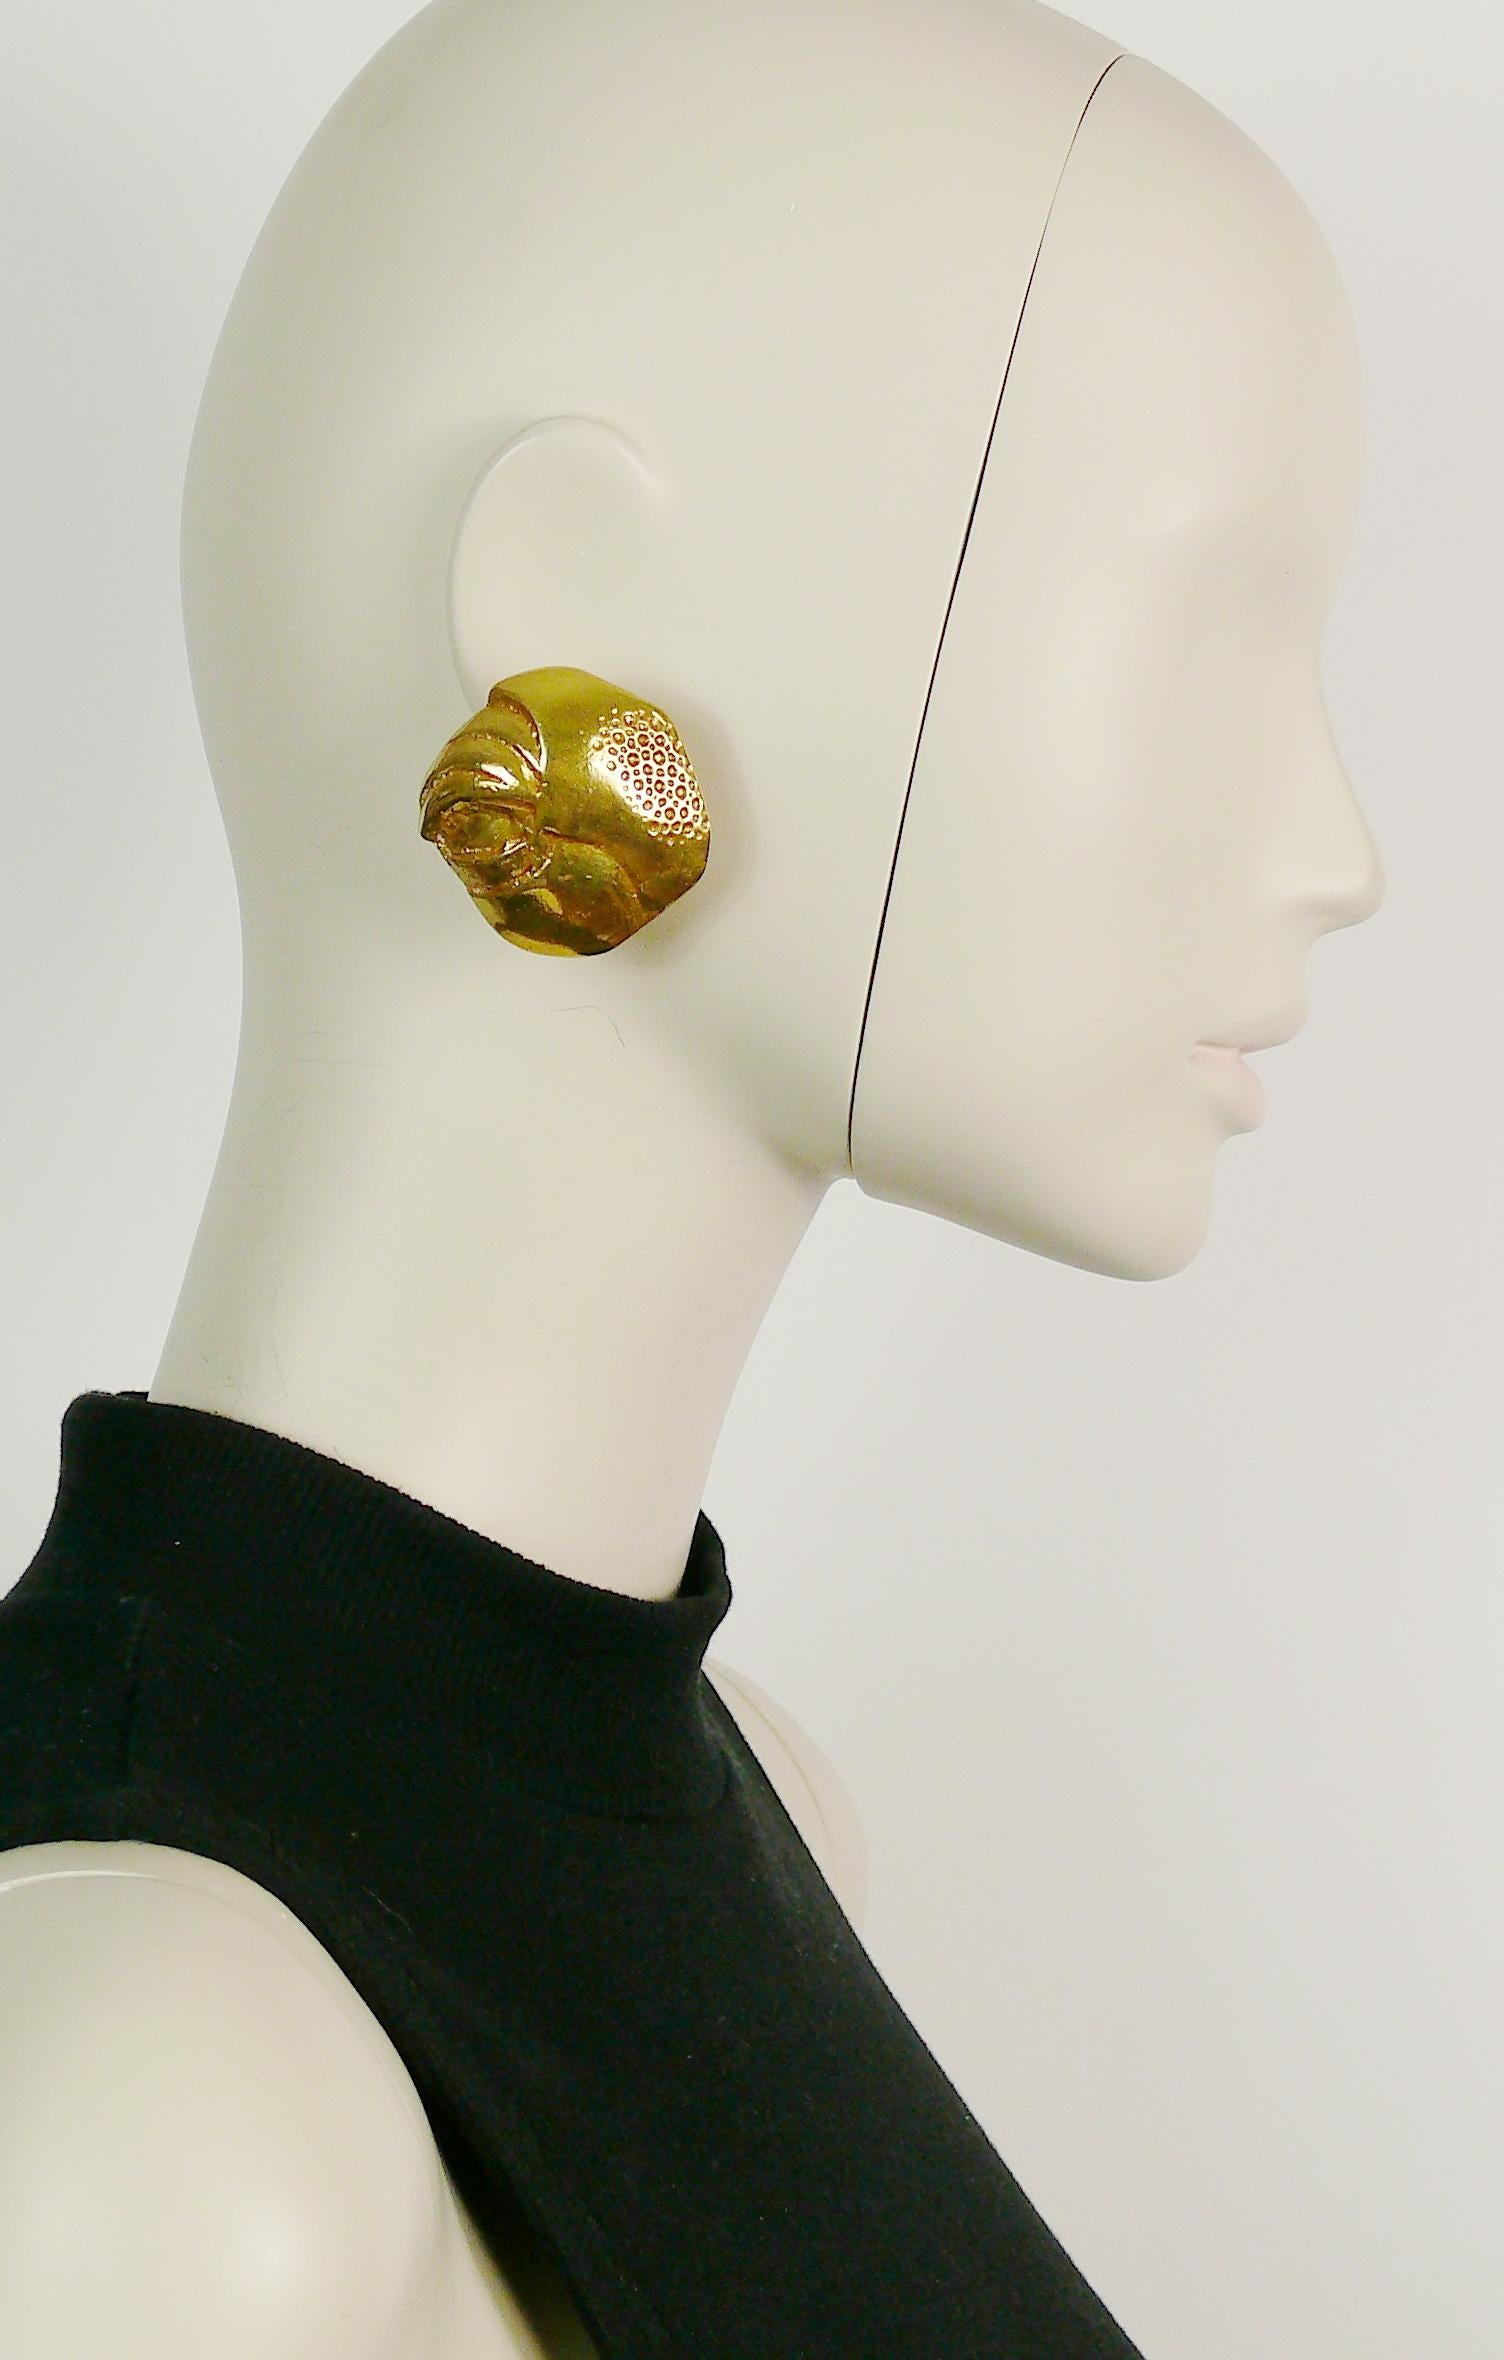 YVES SAINT LAURENT Vintage-Ohrringe in massivem, goldfarbenem, strukturiertem Clip.

Geprägtes YSL Made in France.

Ungefähre Maße: max. ca. 4 cm x max. ca. 4,4 cm (1,57 Zoll x 1,73 Zoll).

ANMERKUNGEN
- Es handelt sich um einen gebrauchten